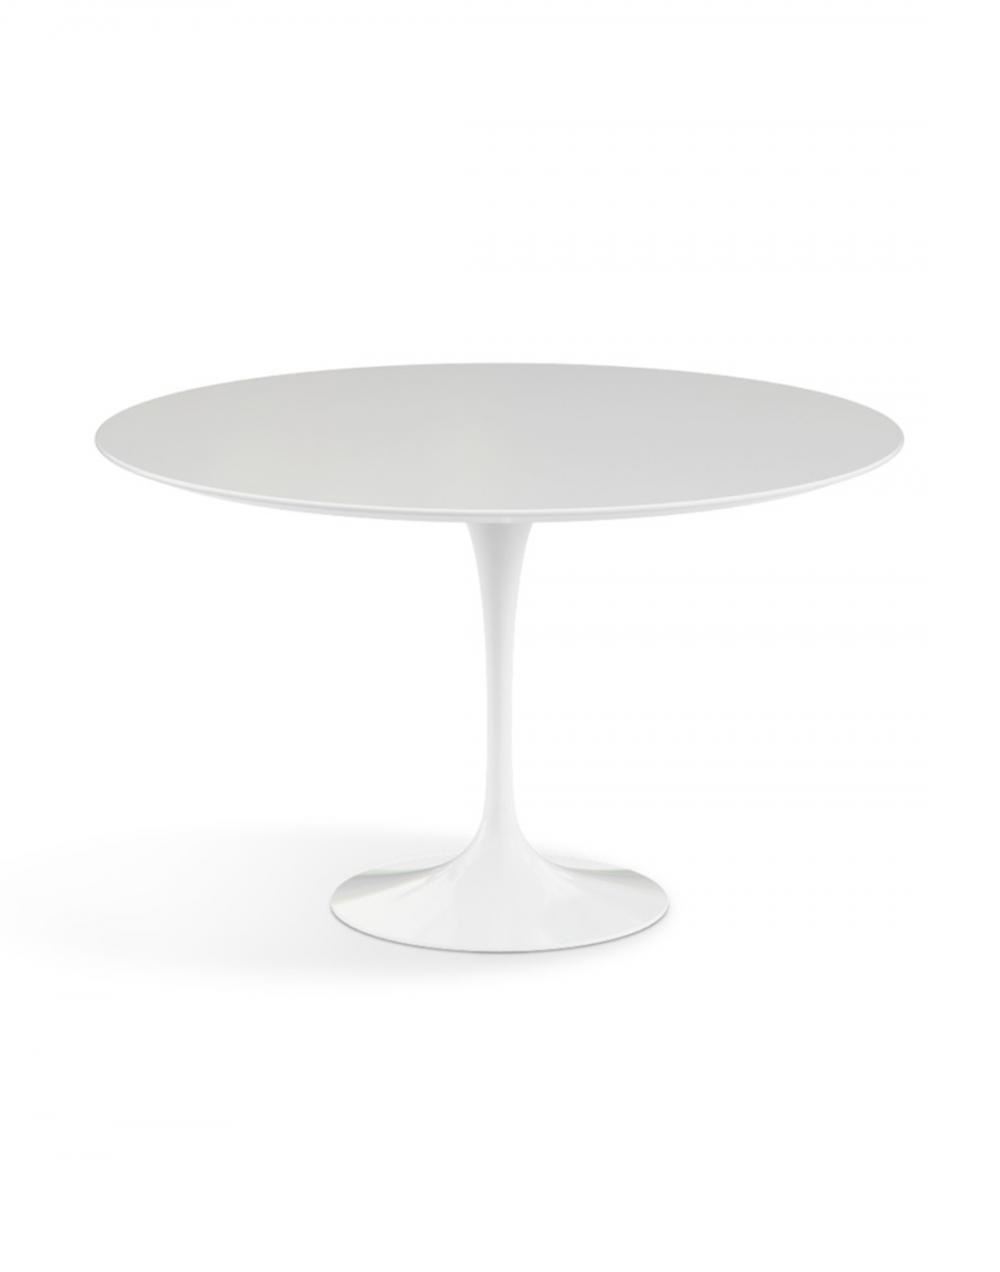 Saarinen Dining Table Round Large White Base White Laminate Top